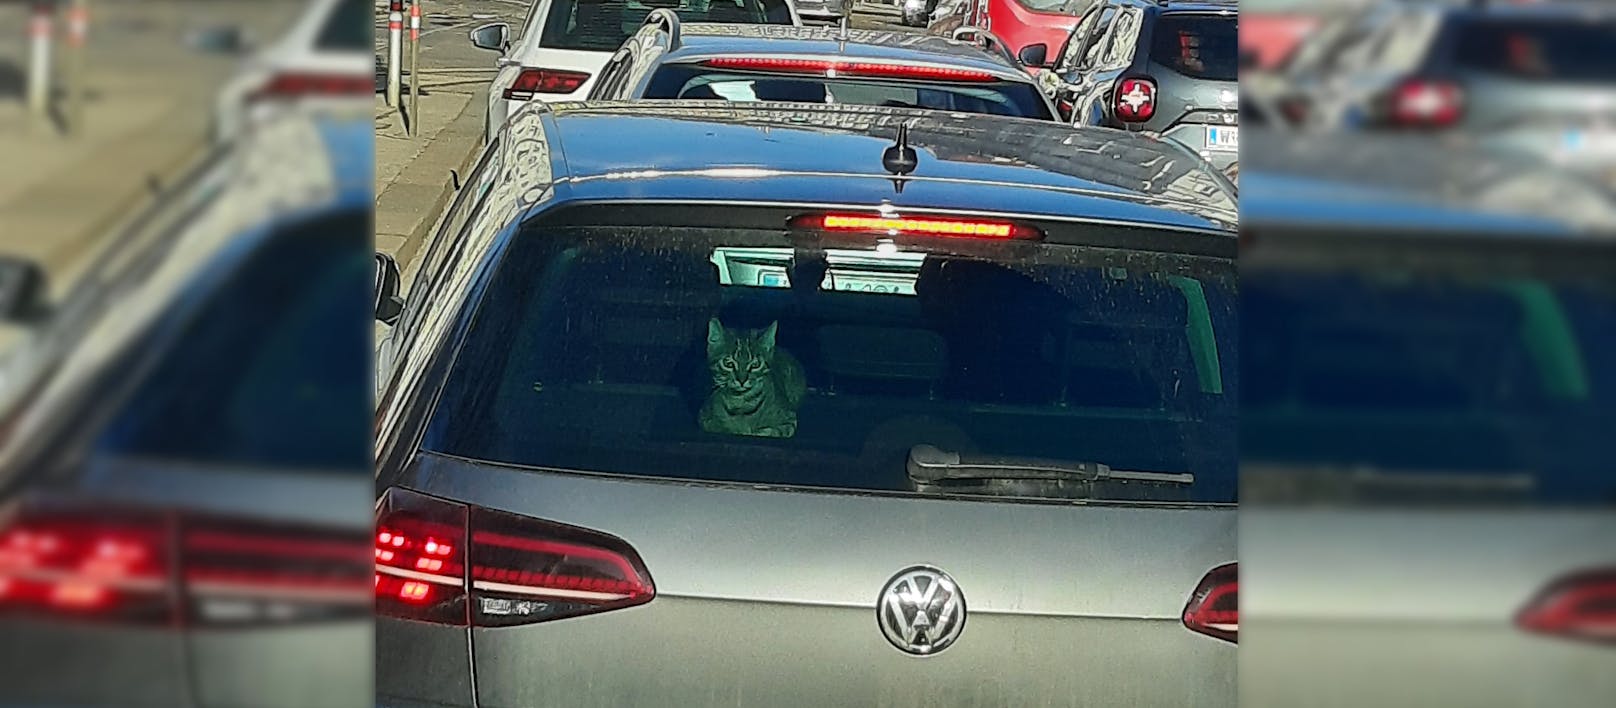 Ob die Katze ein blinder Passagier ist, ist nicht ganz klar.